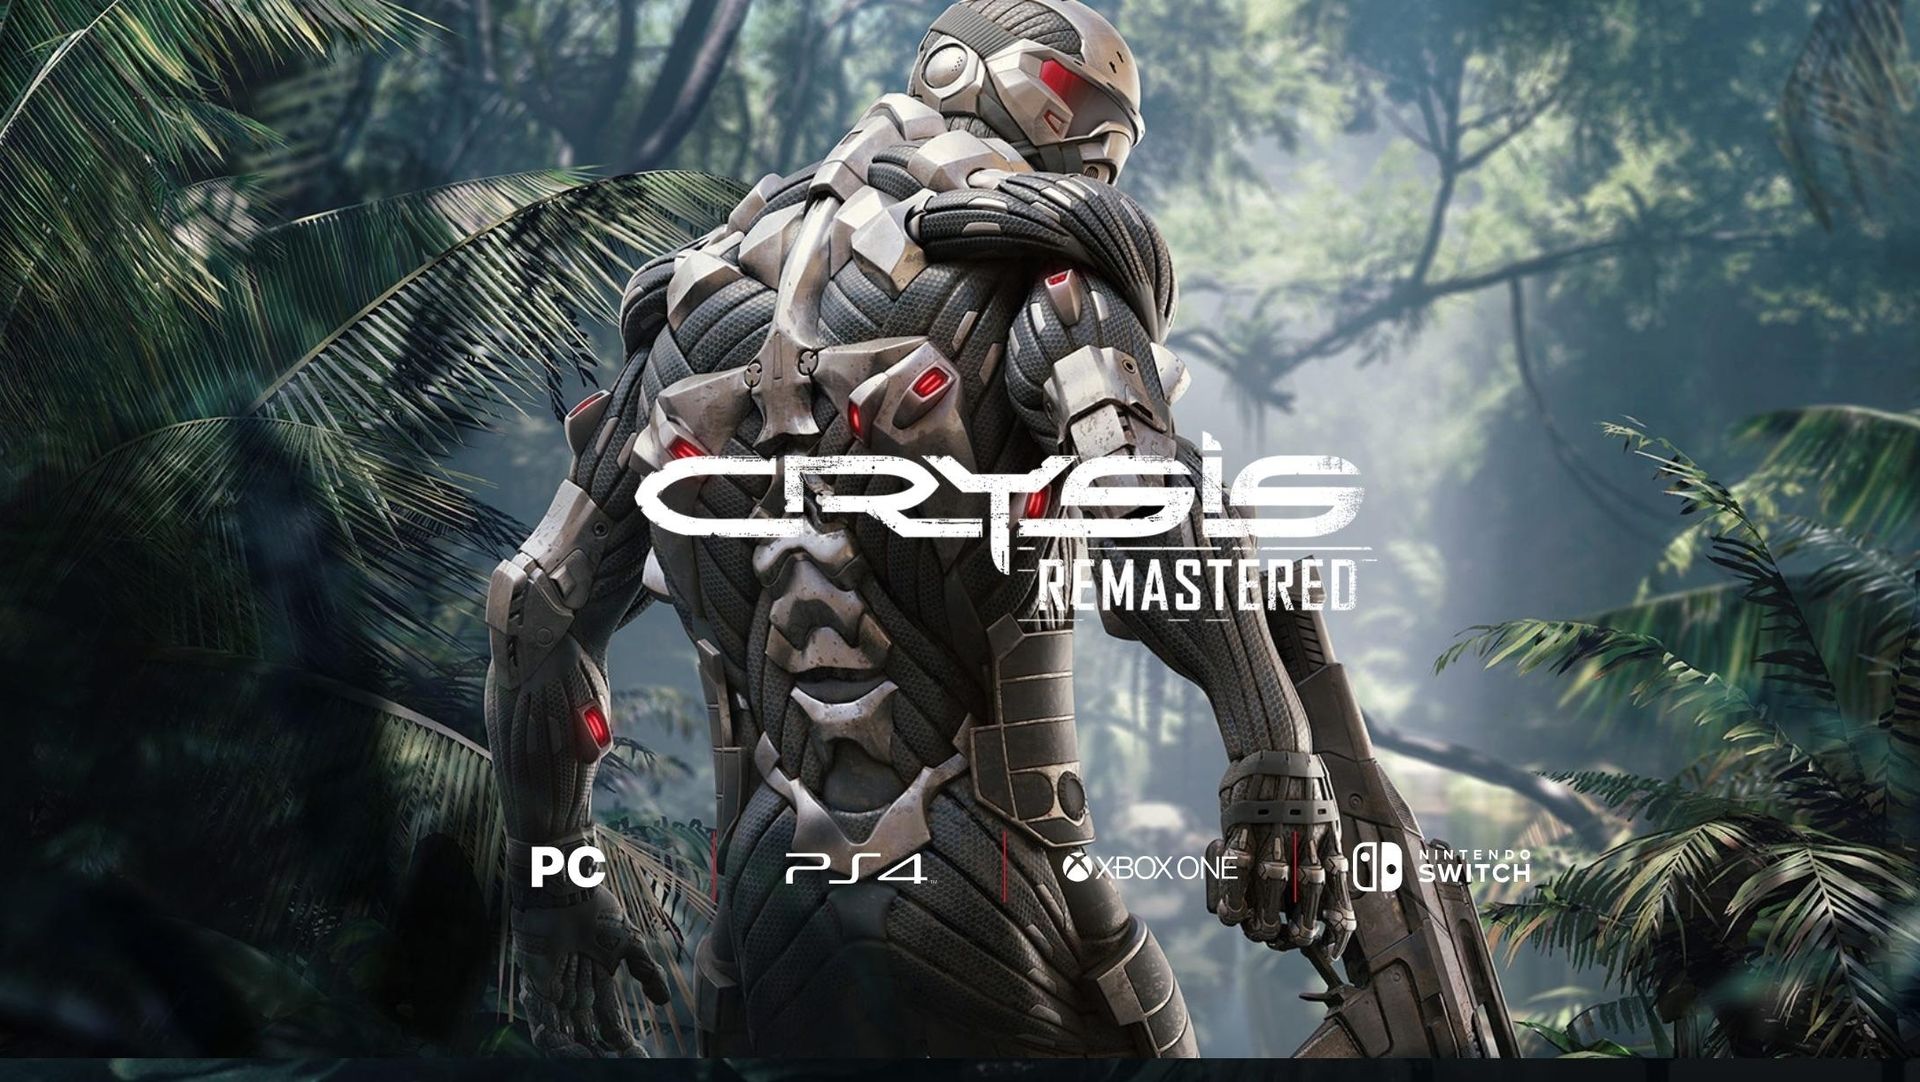 เอาให้การ์ดจอระเบิด Crytek ประกาศเปิดตัว Crysis Remastered อัปเดตกราฟฟิก และเพิ่ม Ray Tracing เตรียมลง PC, PS4, Xbox One และ Nintendo Switch